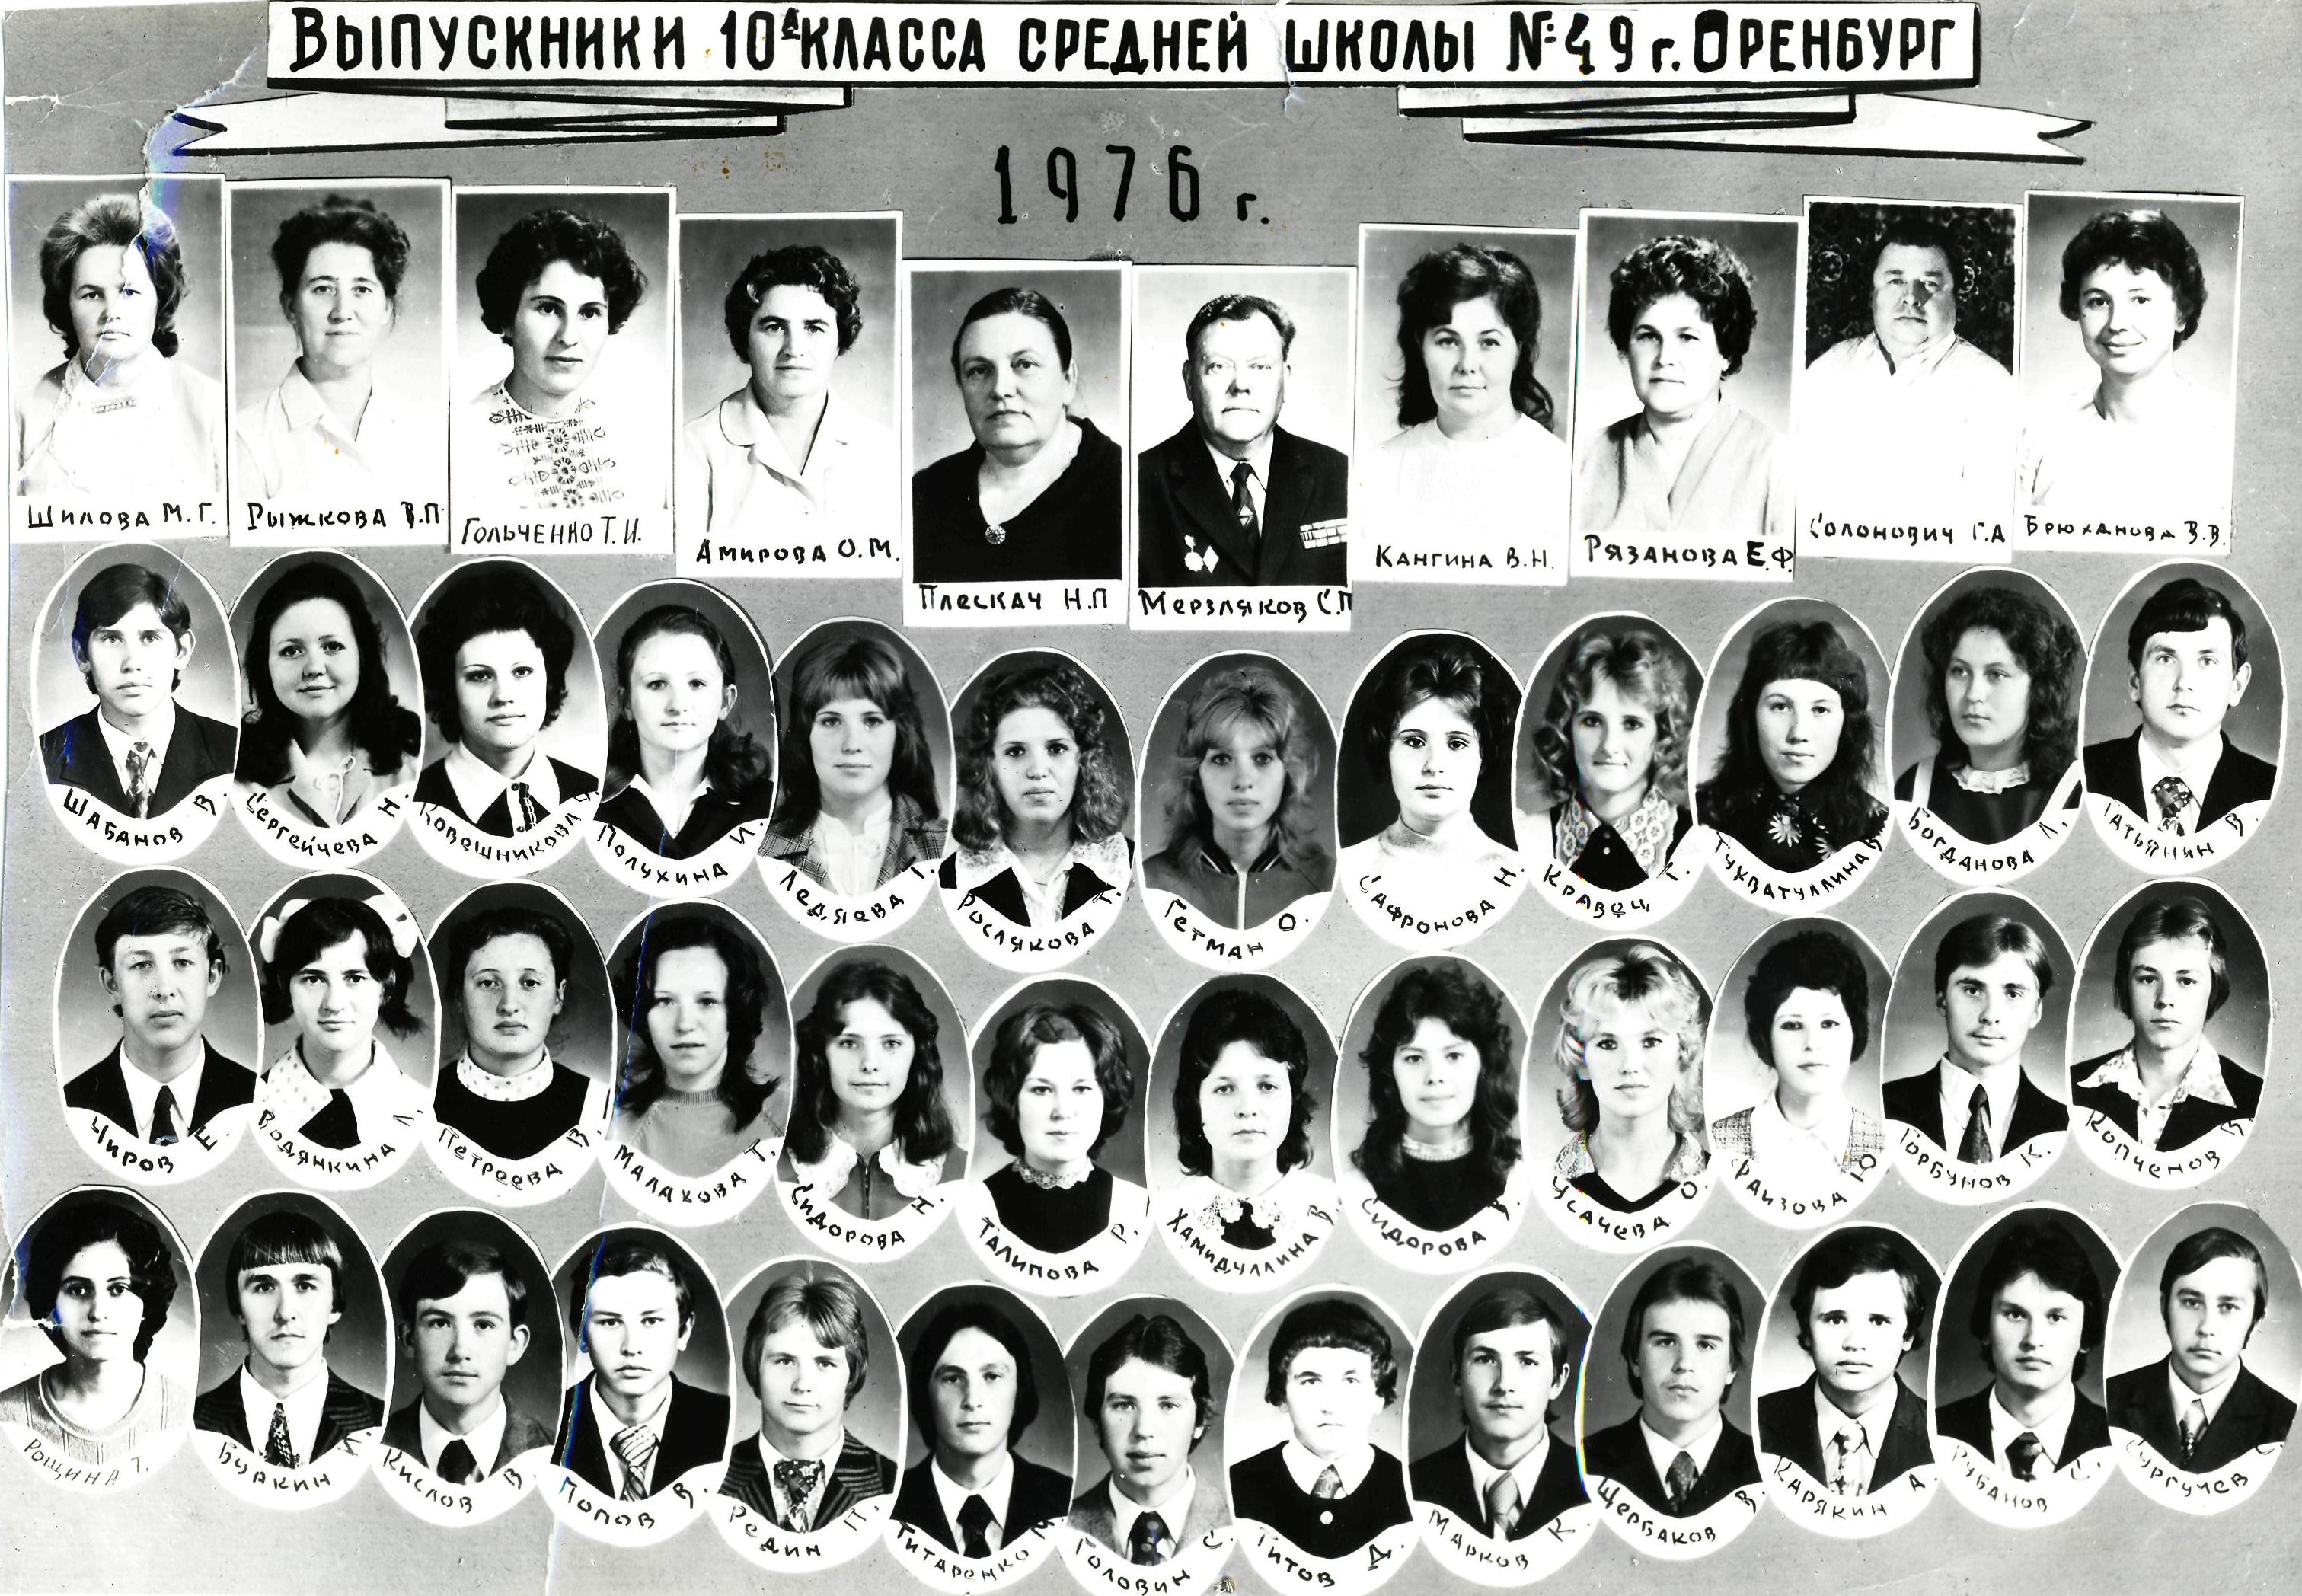 1976, 10А, Брюханова Валентина Васильевна